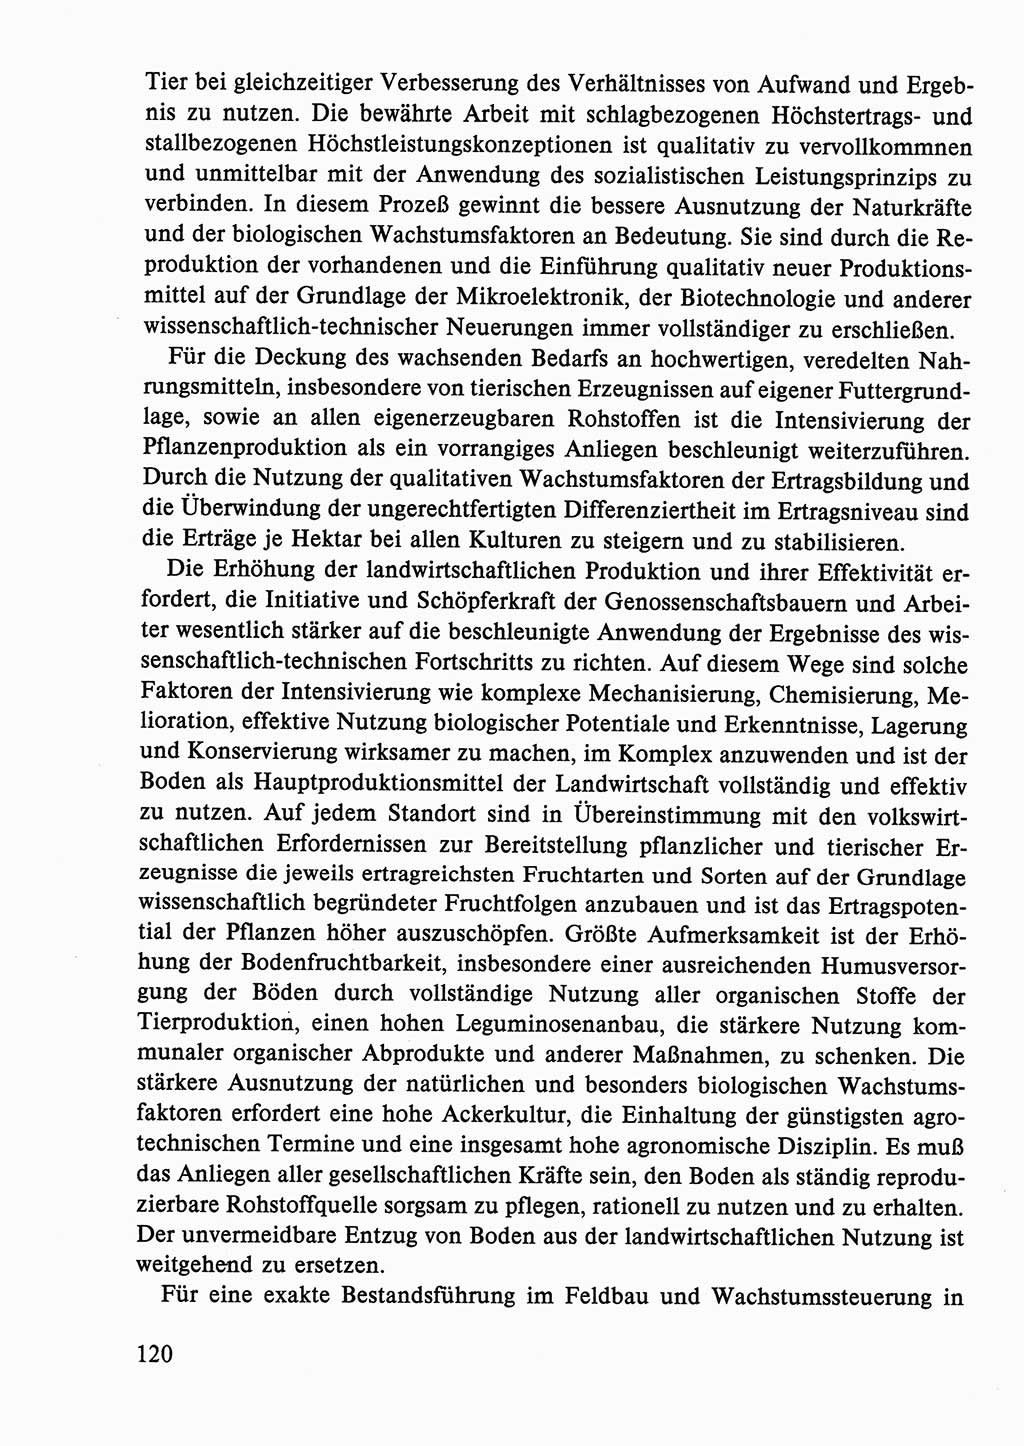 Dokumente der Sozialistischen Einheitspartei Deutschlands (SED) [Deutsche Demokratische Republik (DDR)] 1986-1987, Seite 120 (Dok. SED DDR 1986-1987, S. 120)